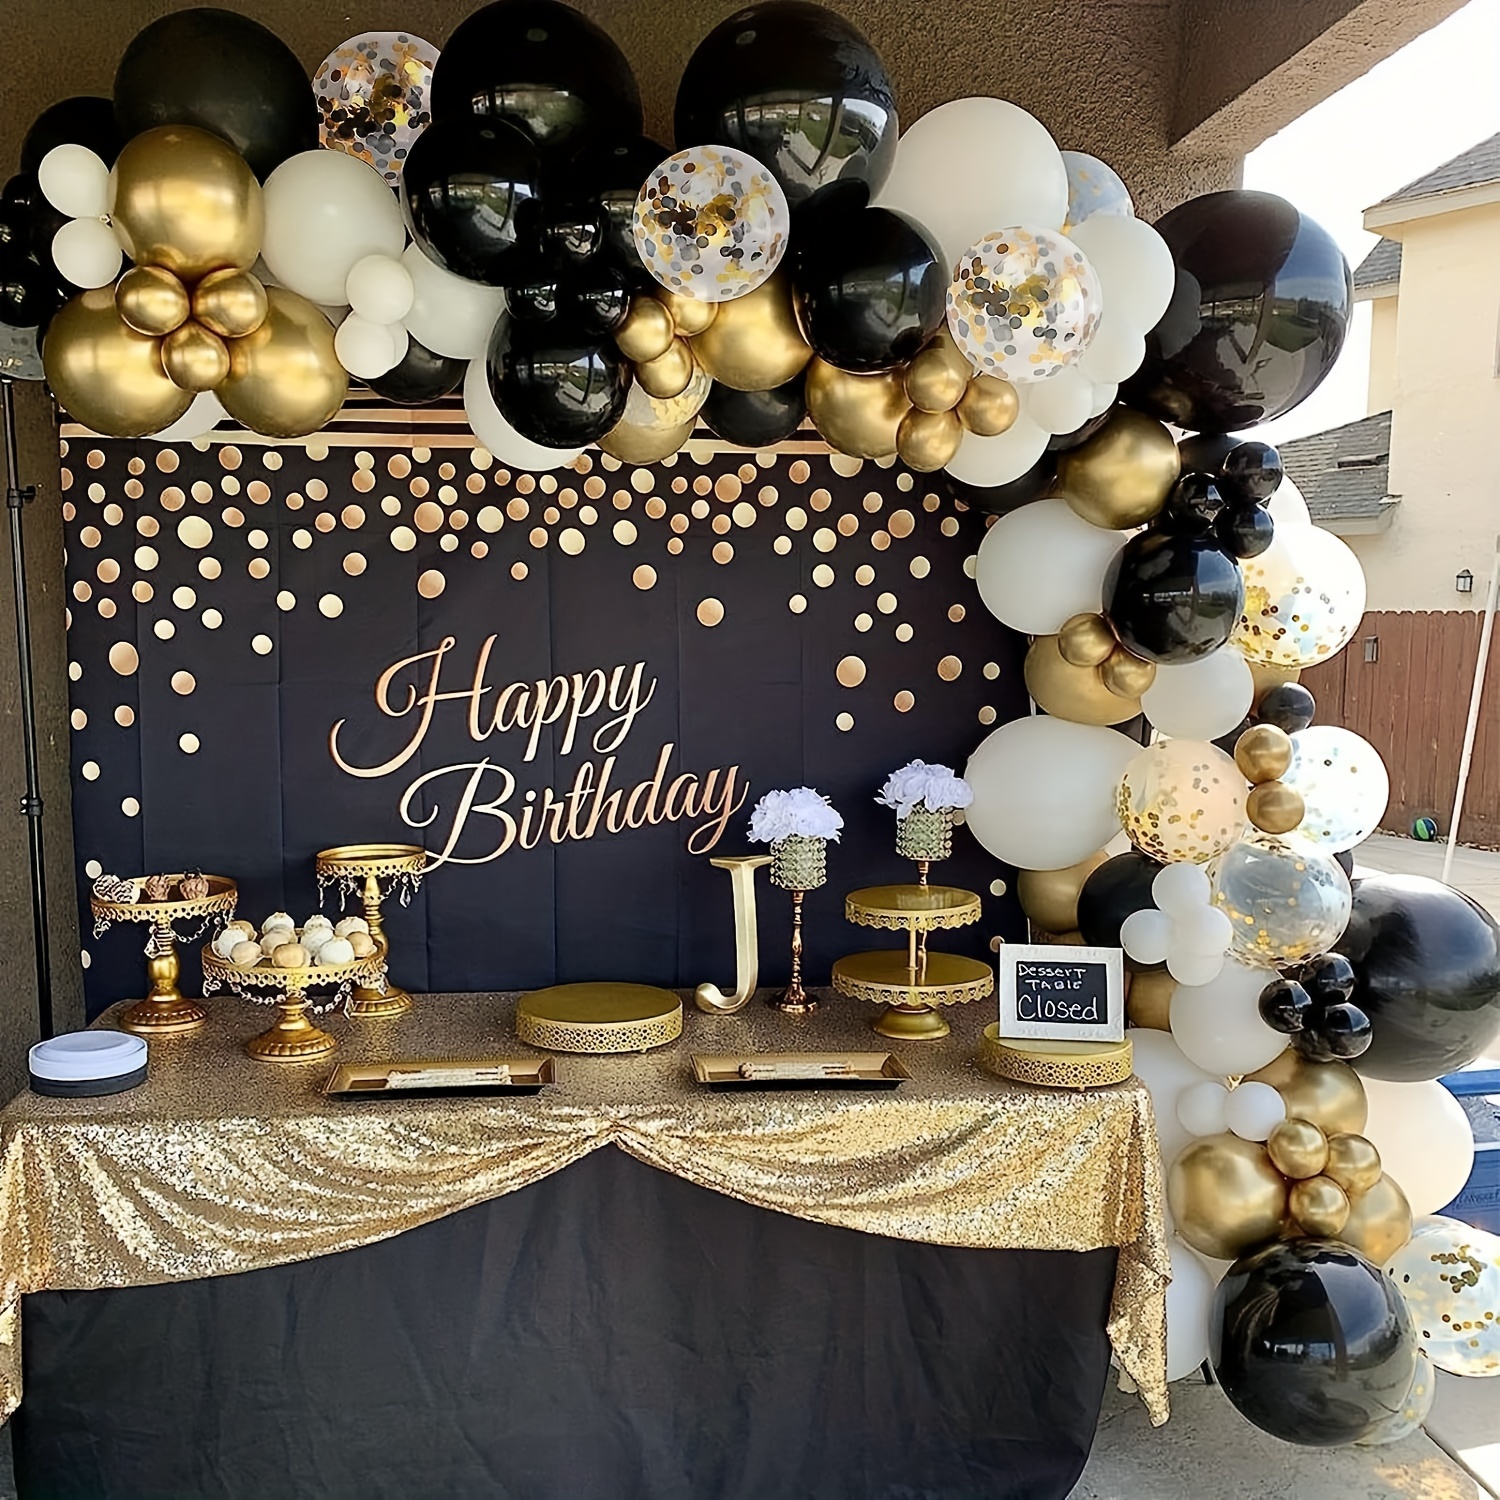 Kit de guirnalda de globos dorados y negros, confeti dorado, globo de látex  de 30, 40, 50, decoración de fiesta de feliz cumpleaños y Baby Shower, 123  unidades